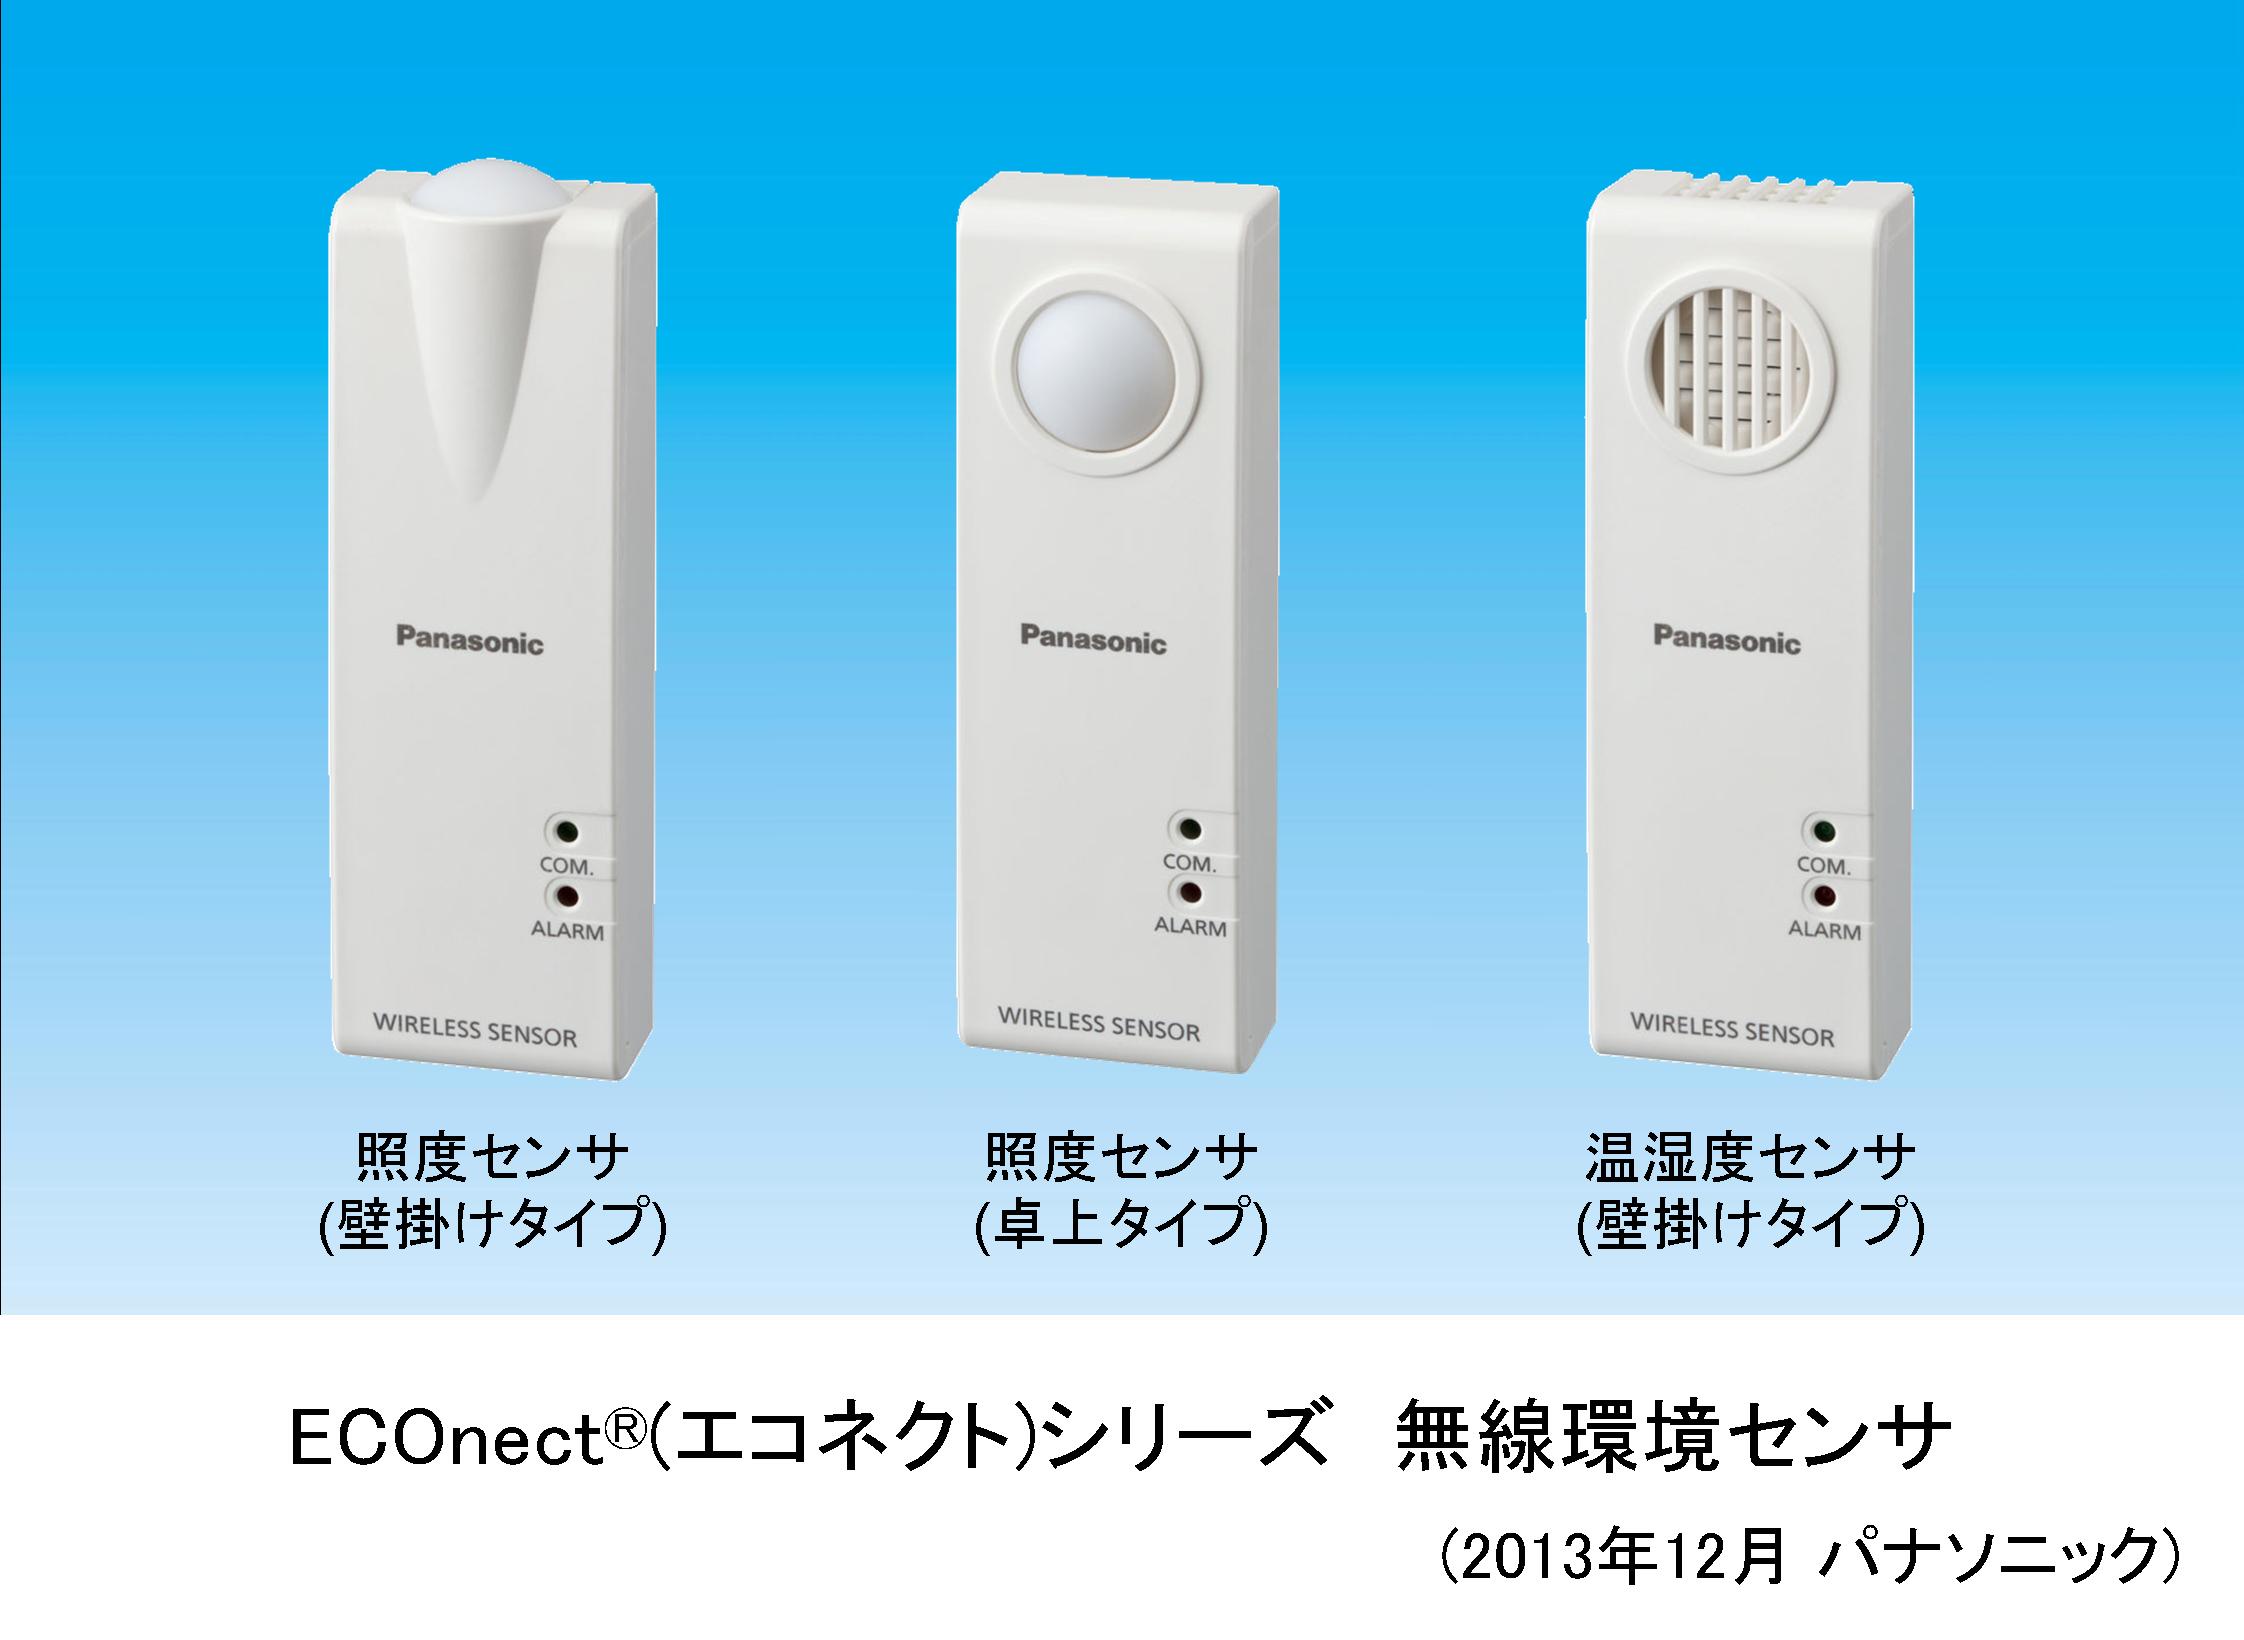 「ECOnect(R) (エコネクト) シリーズ 無線環境センサ」を製品化～温湿度・照度を計測し、空調、照明の最適制御で快適とエコを両立